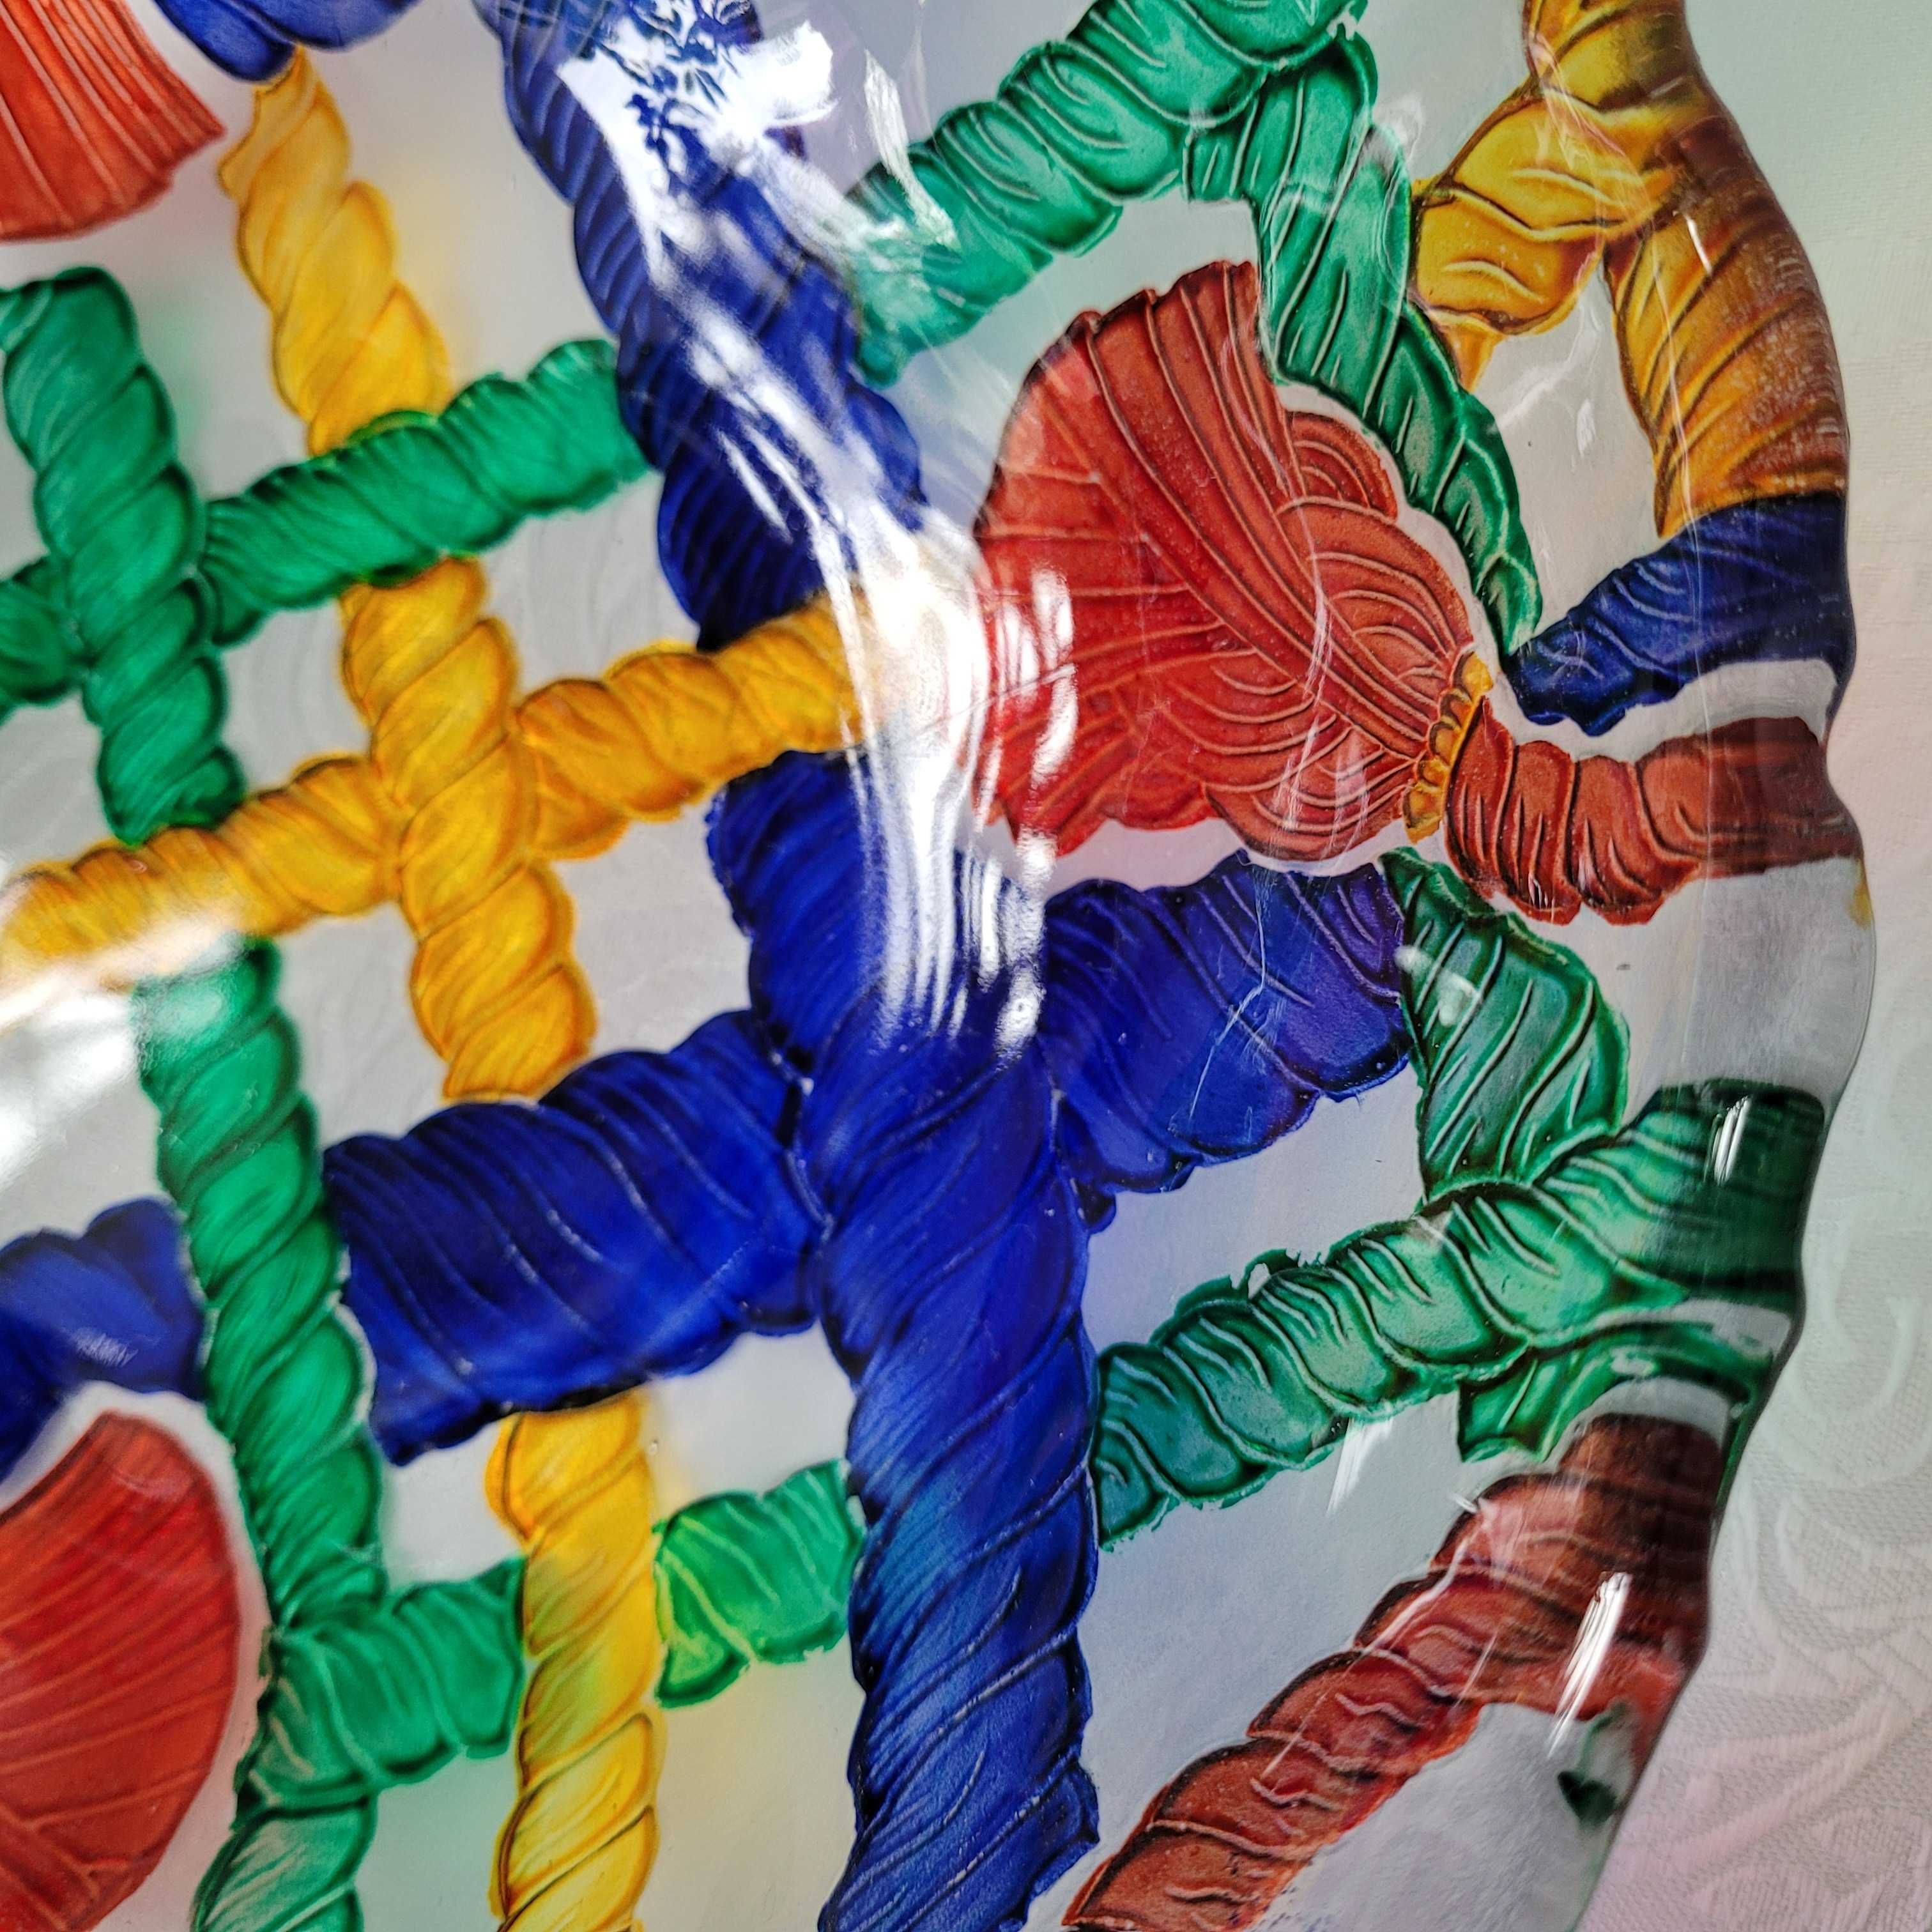 Wielkanocna kolorowa misa/patera, szkło mrożone malowane